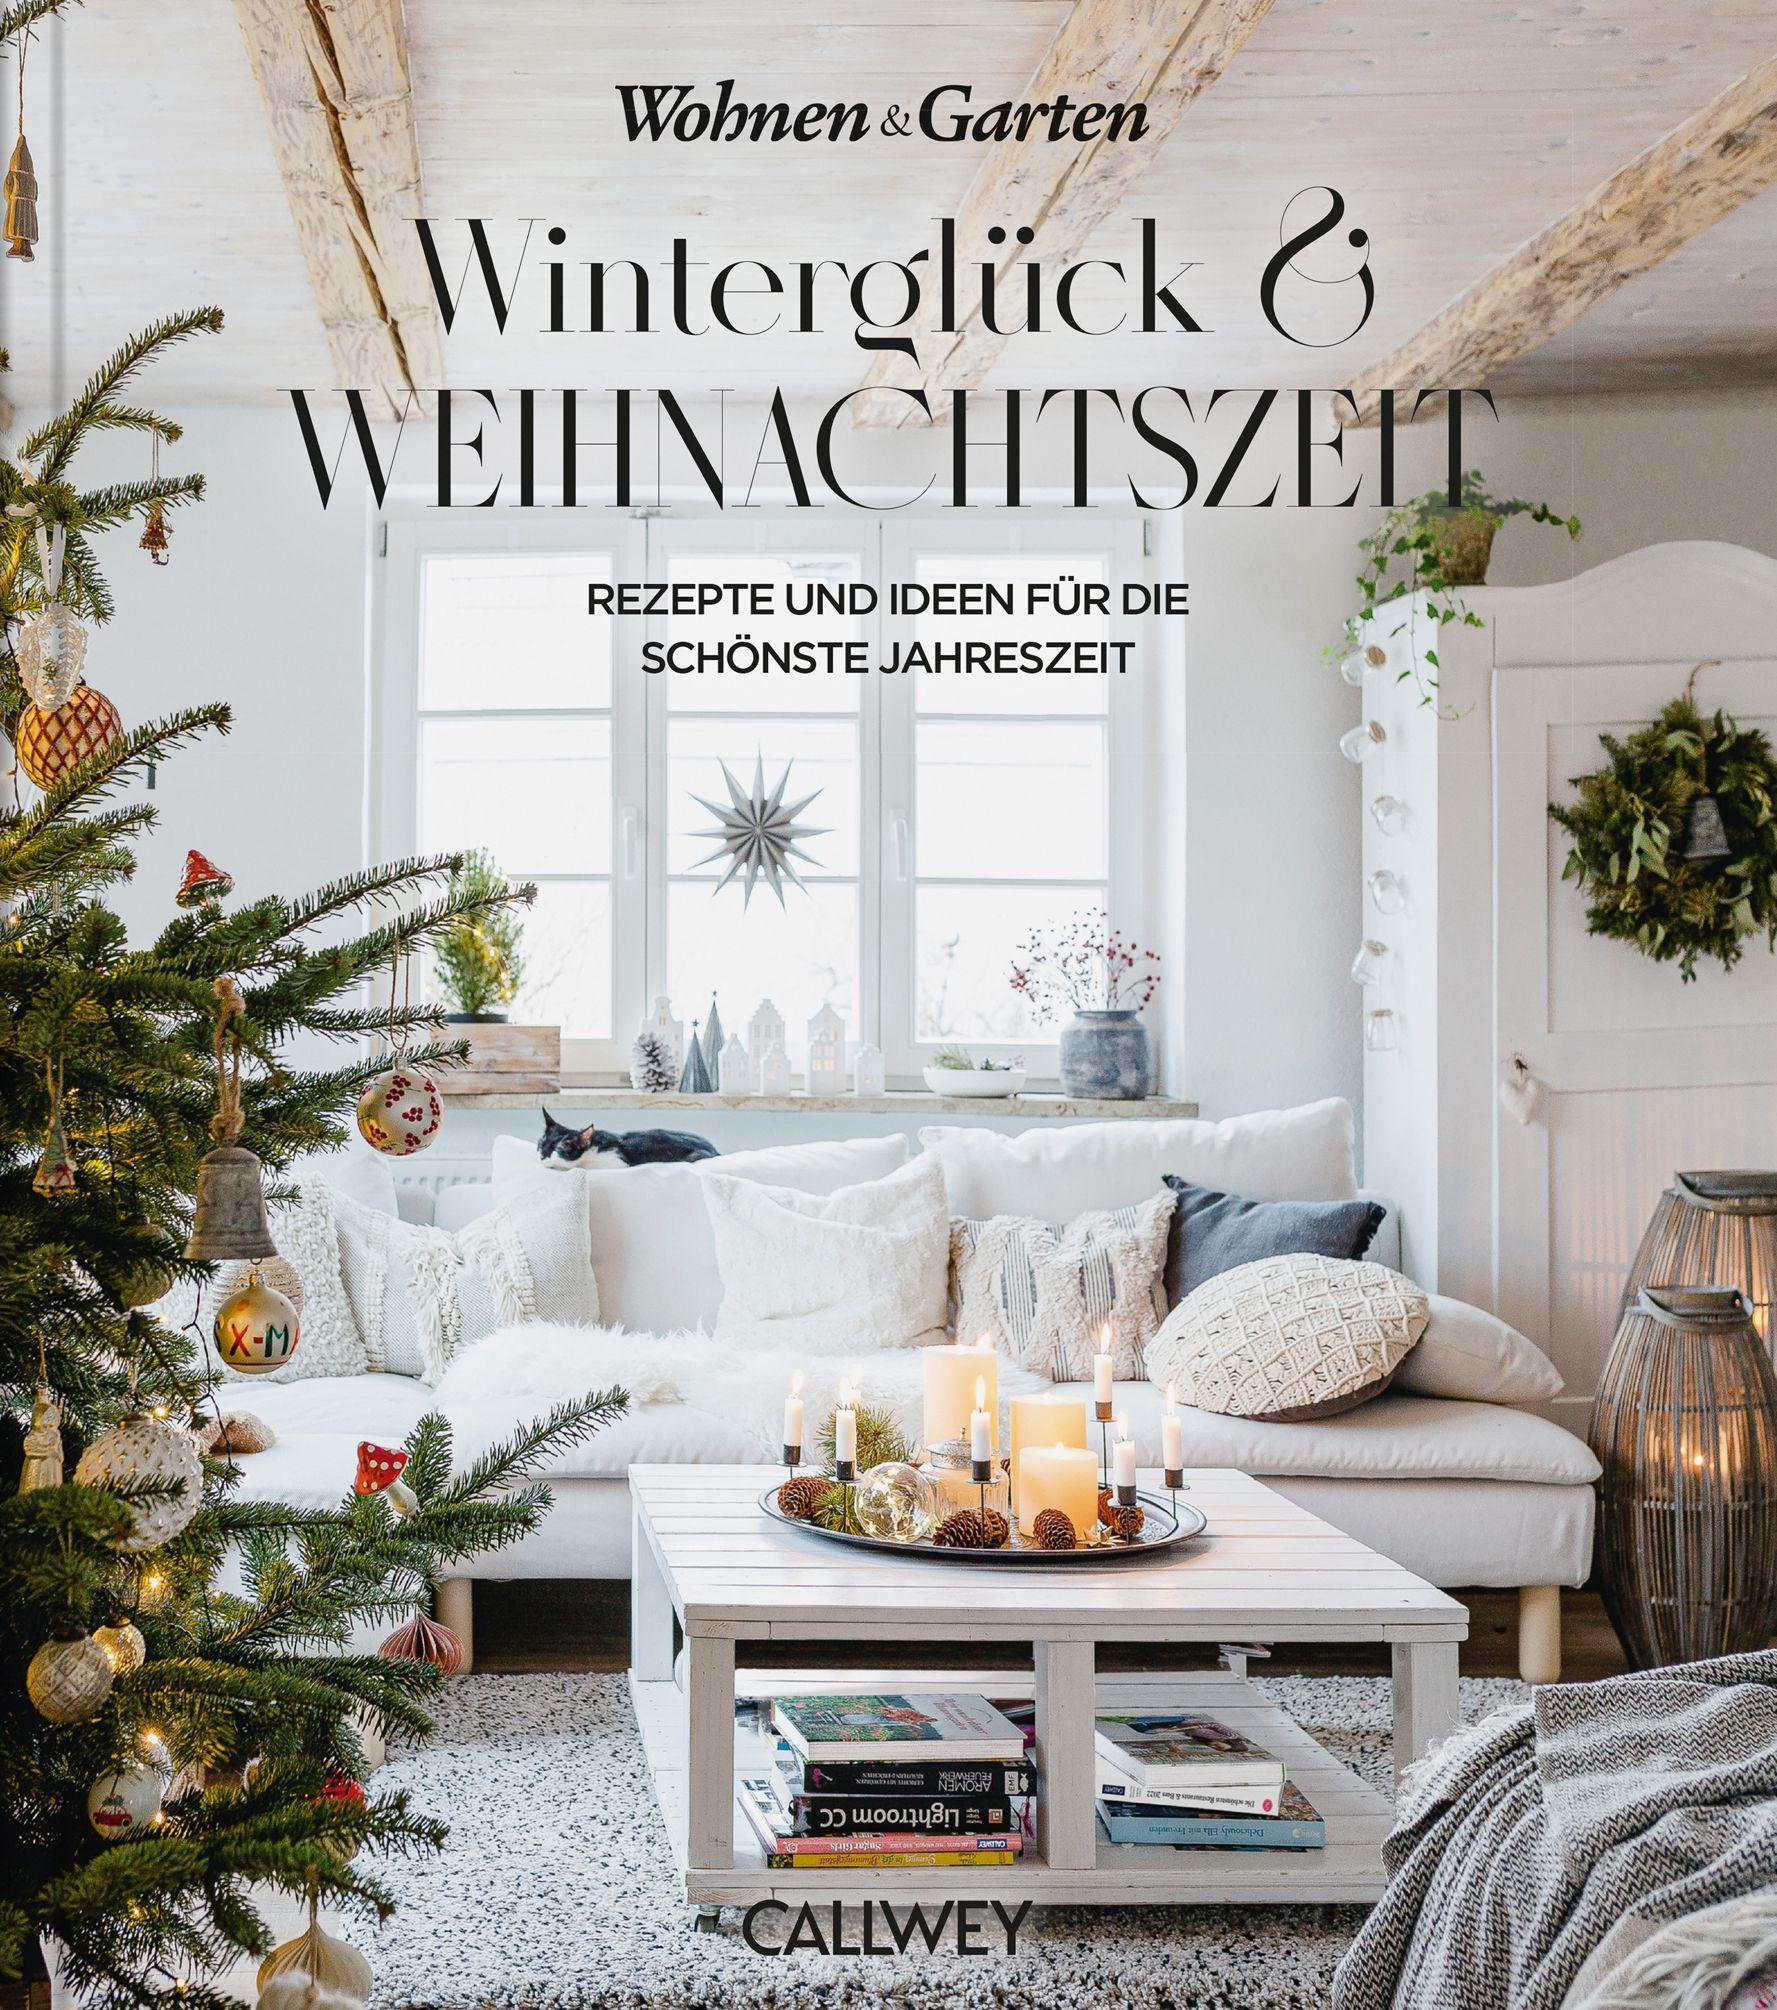 Winterglück & Weihnachtszeit Rezepte und Ideen für die schönste Jahreszeit